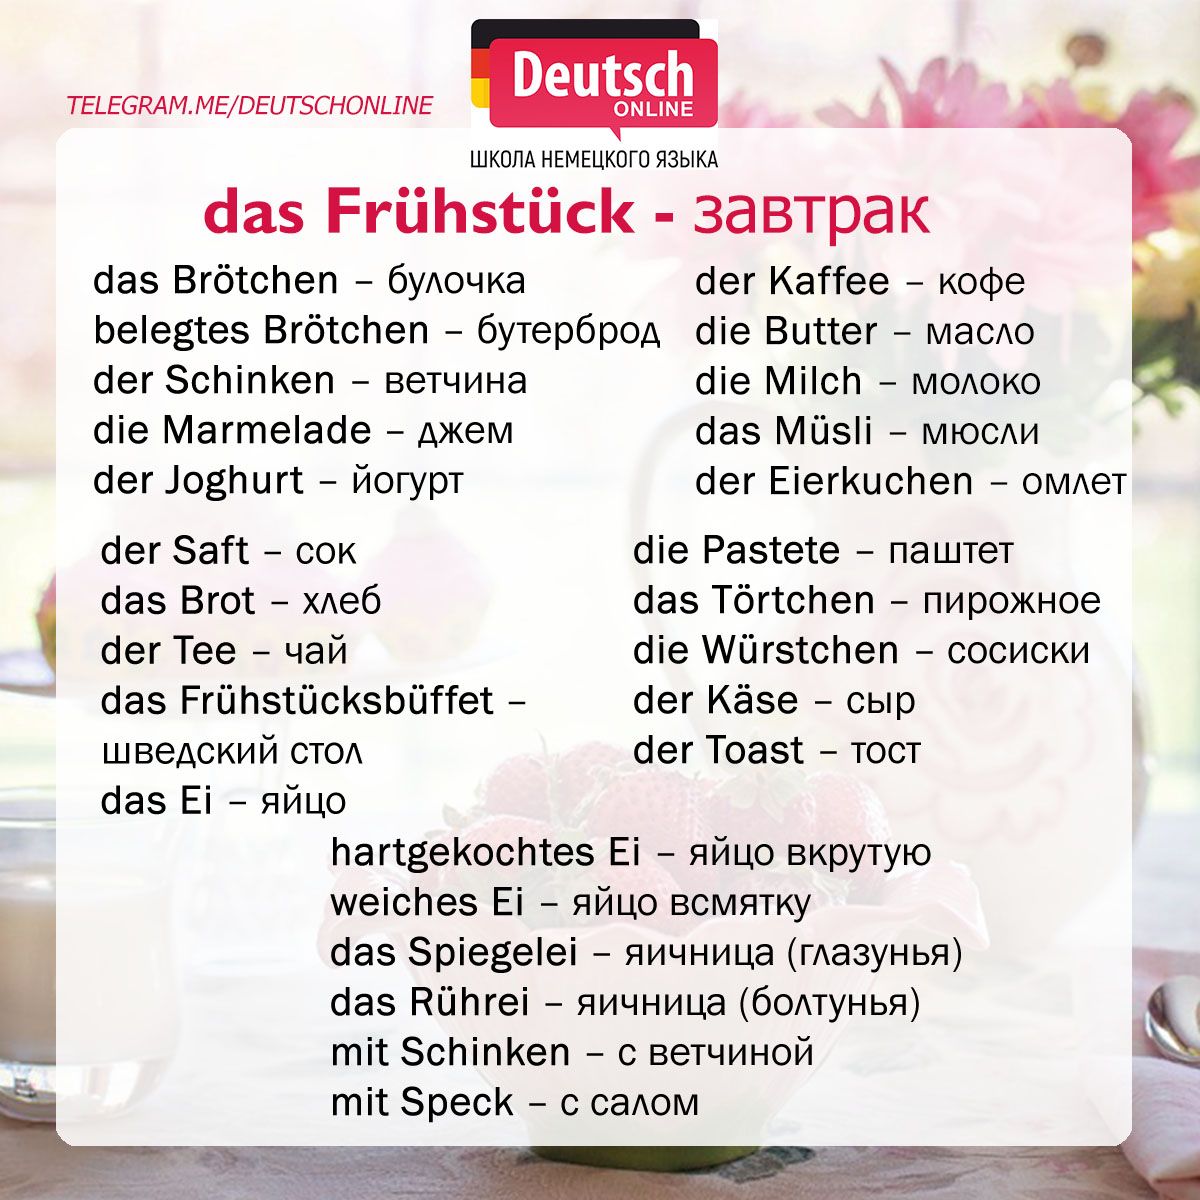 Хорошо по немецки. Немецкие слова завтрак. Завтрак на немецком языке. Немецкая лексика по теме завтрак. Продукты на немецком языке с переводом.